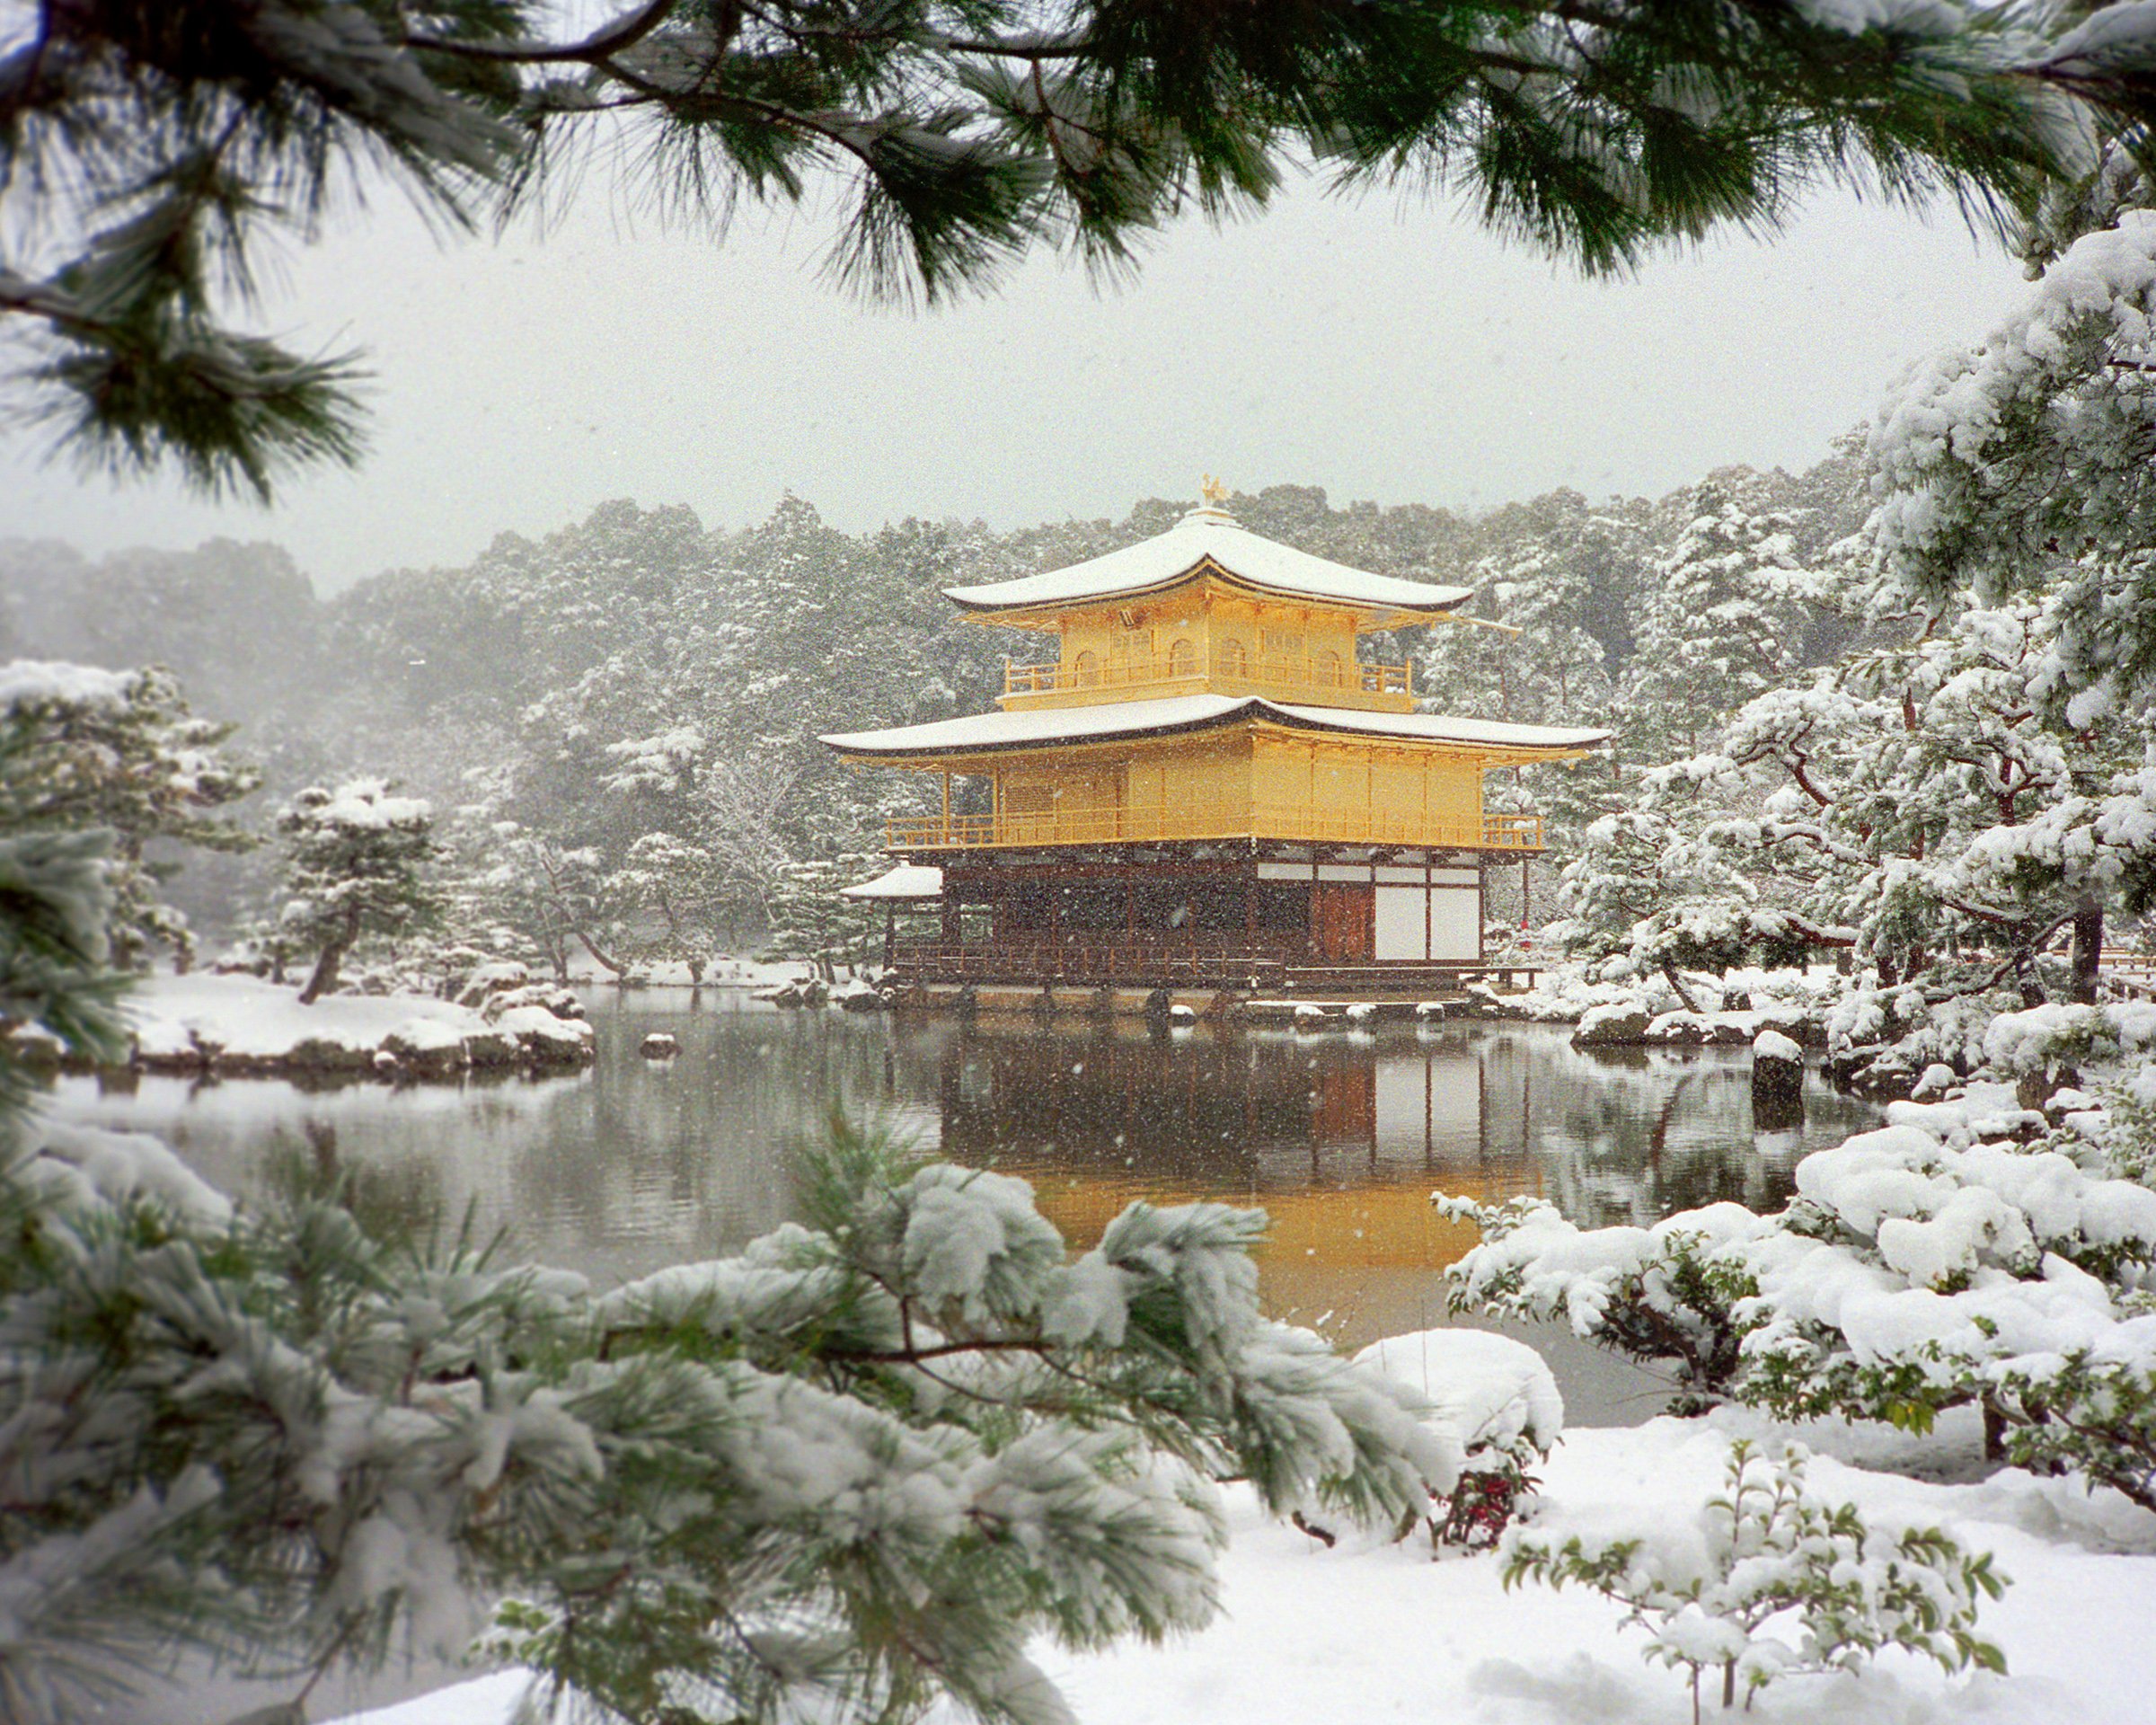 Япония храм Кинкакудзи (золотой павильон) внутри